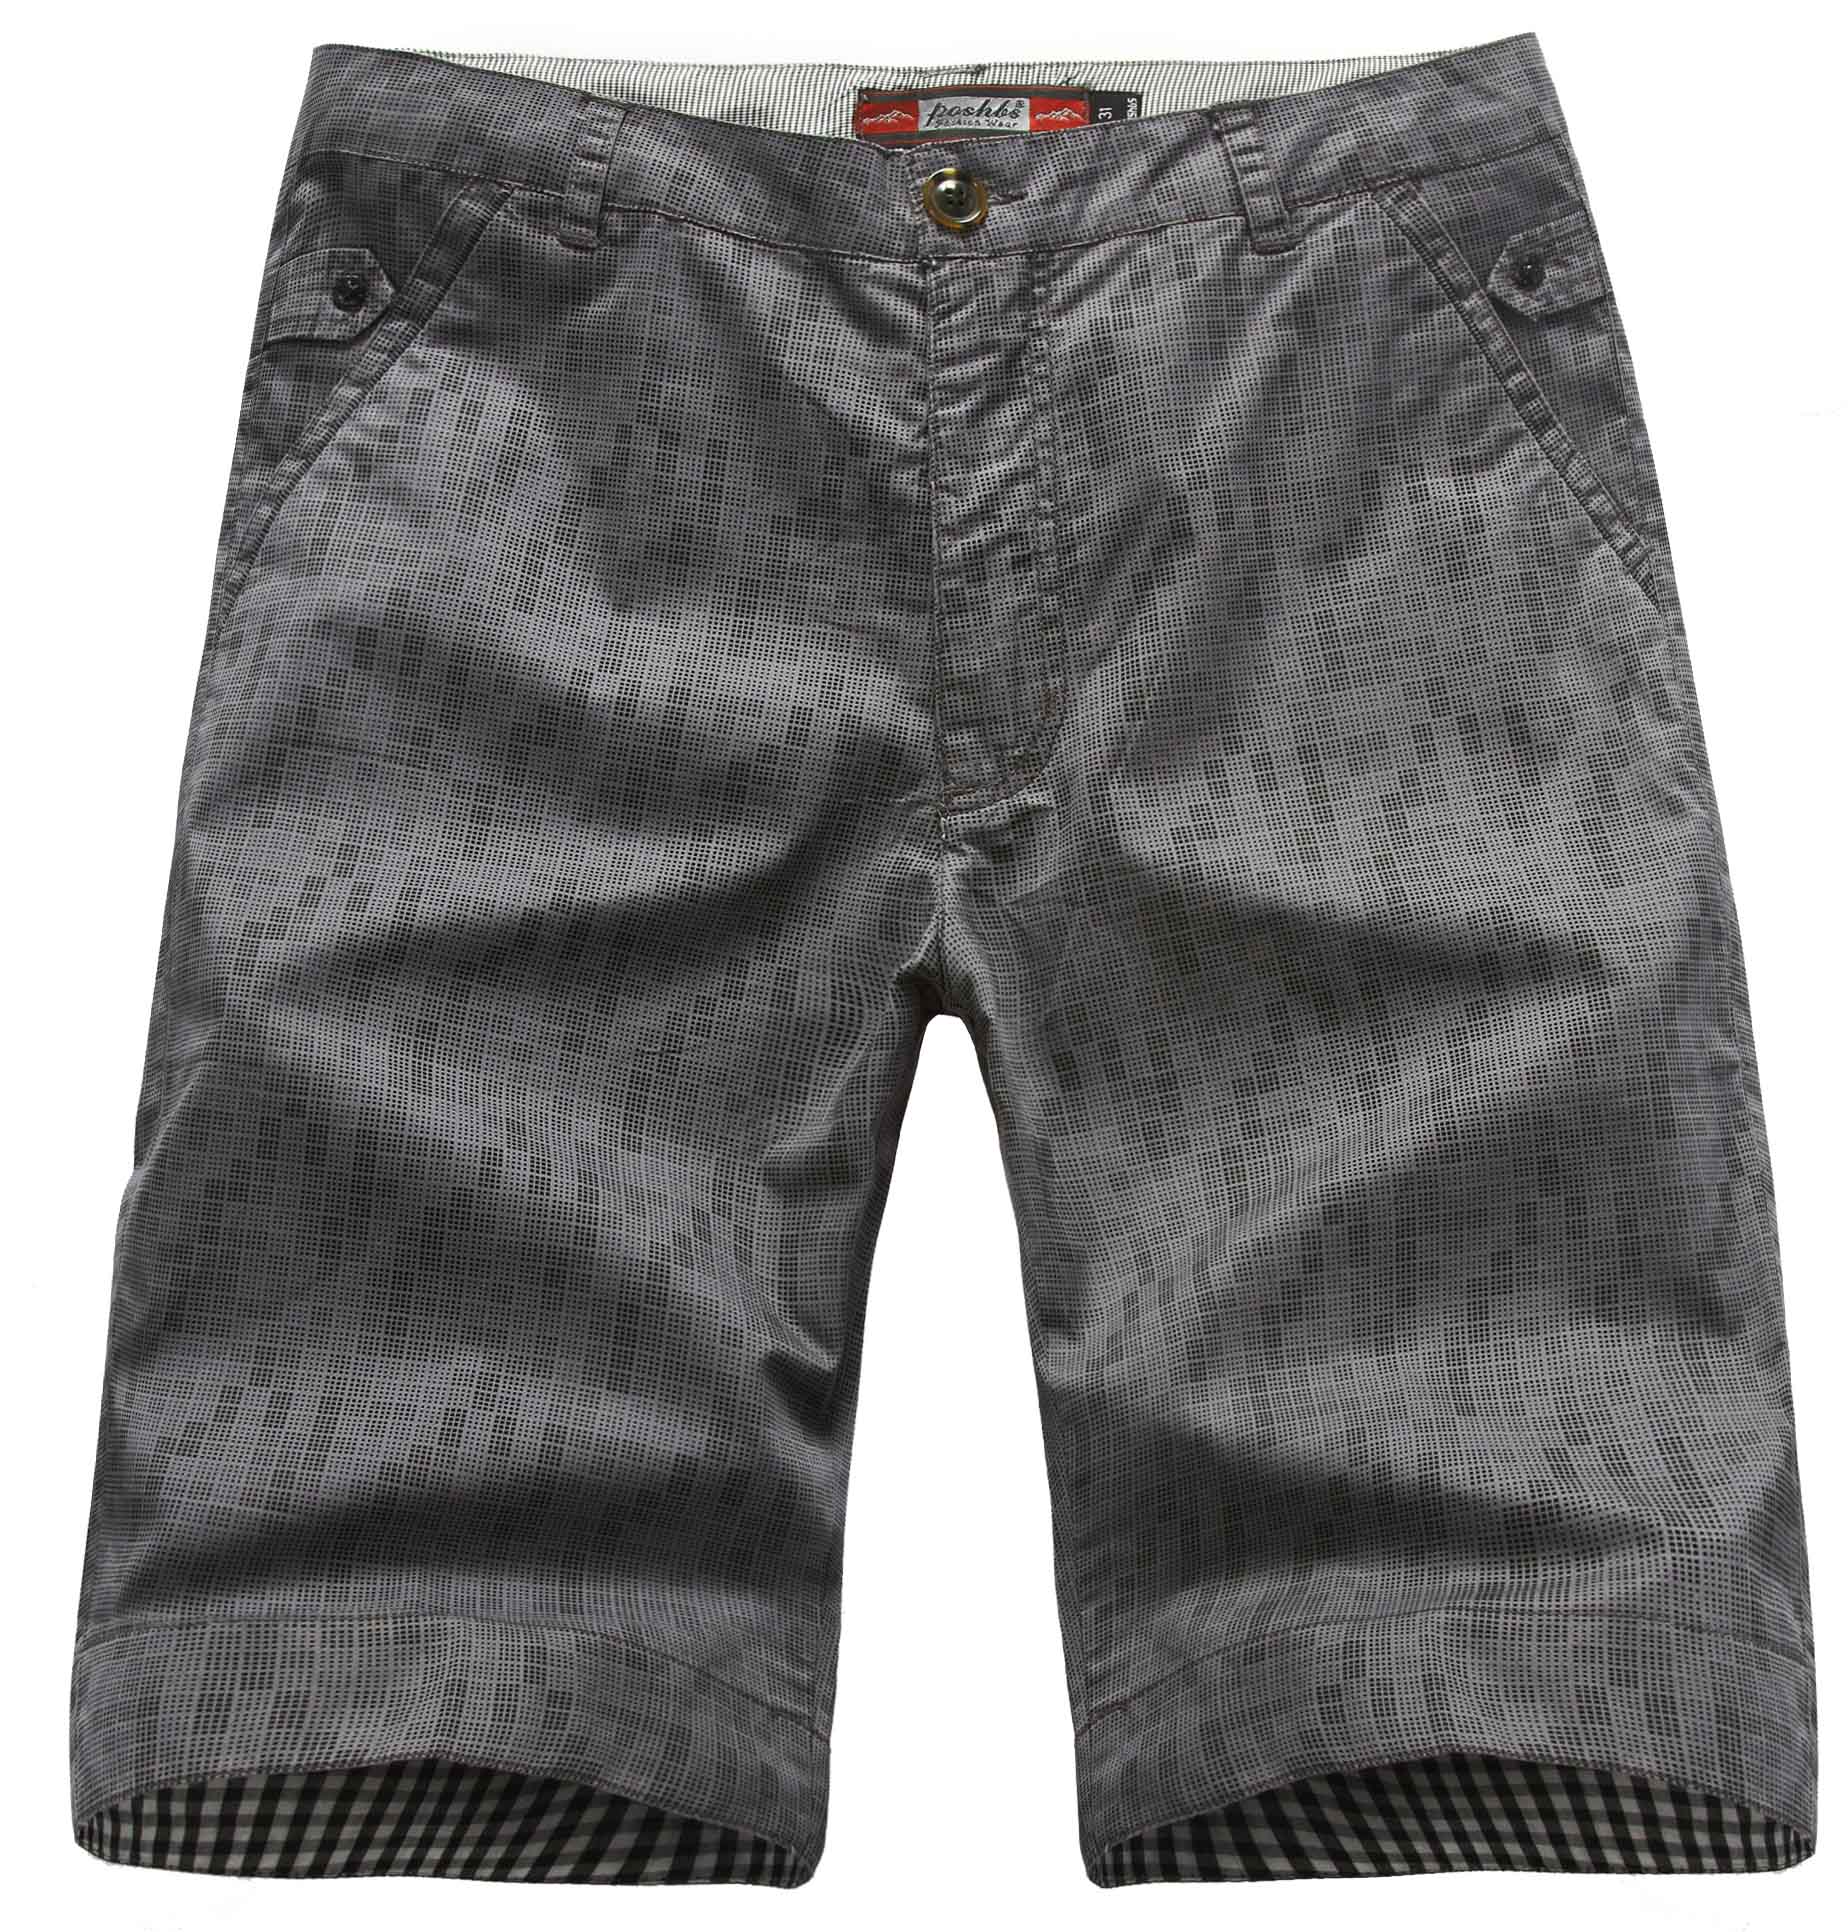 2013夏季男装休闲短裤 英伦时尚男士格子短裤